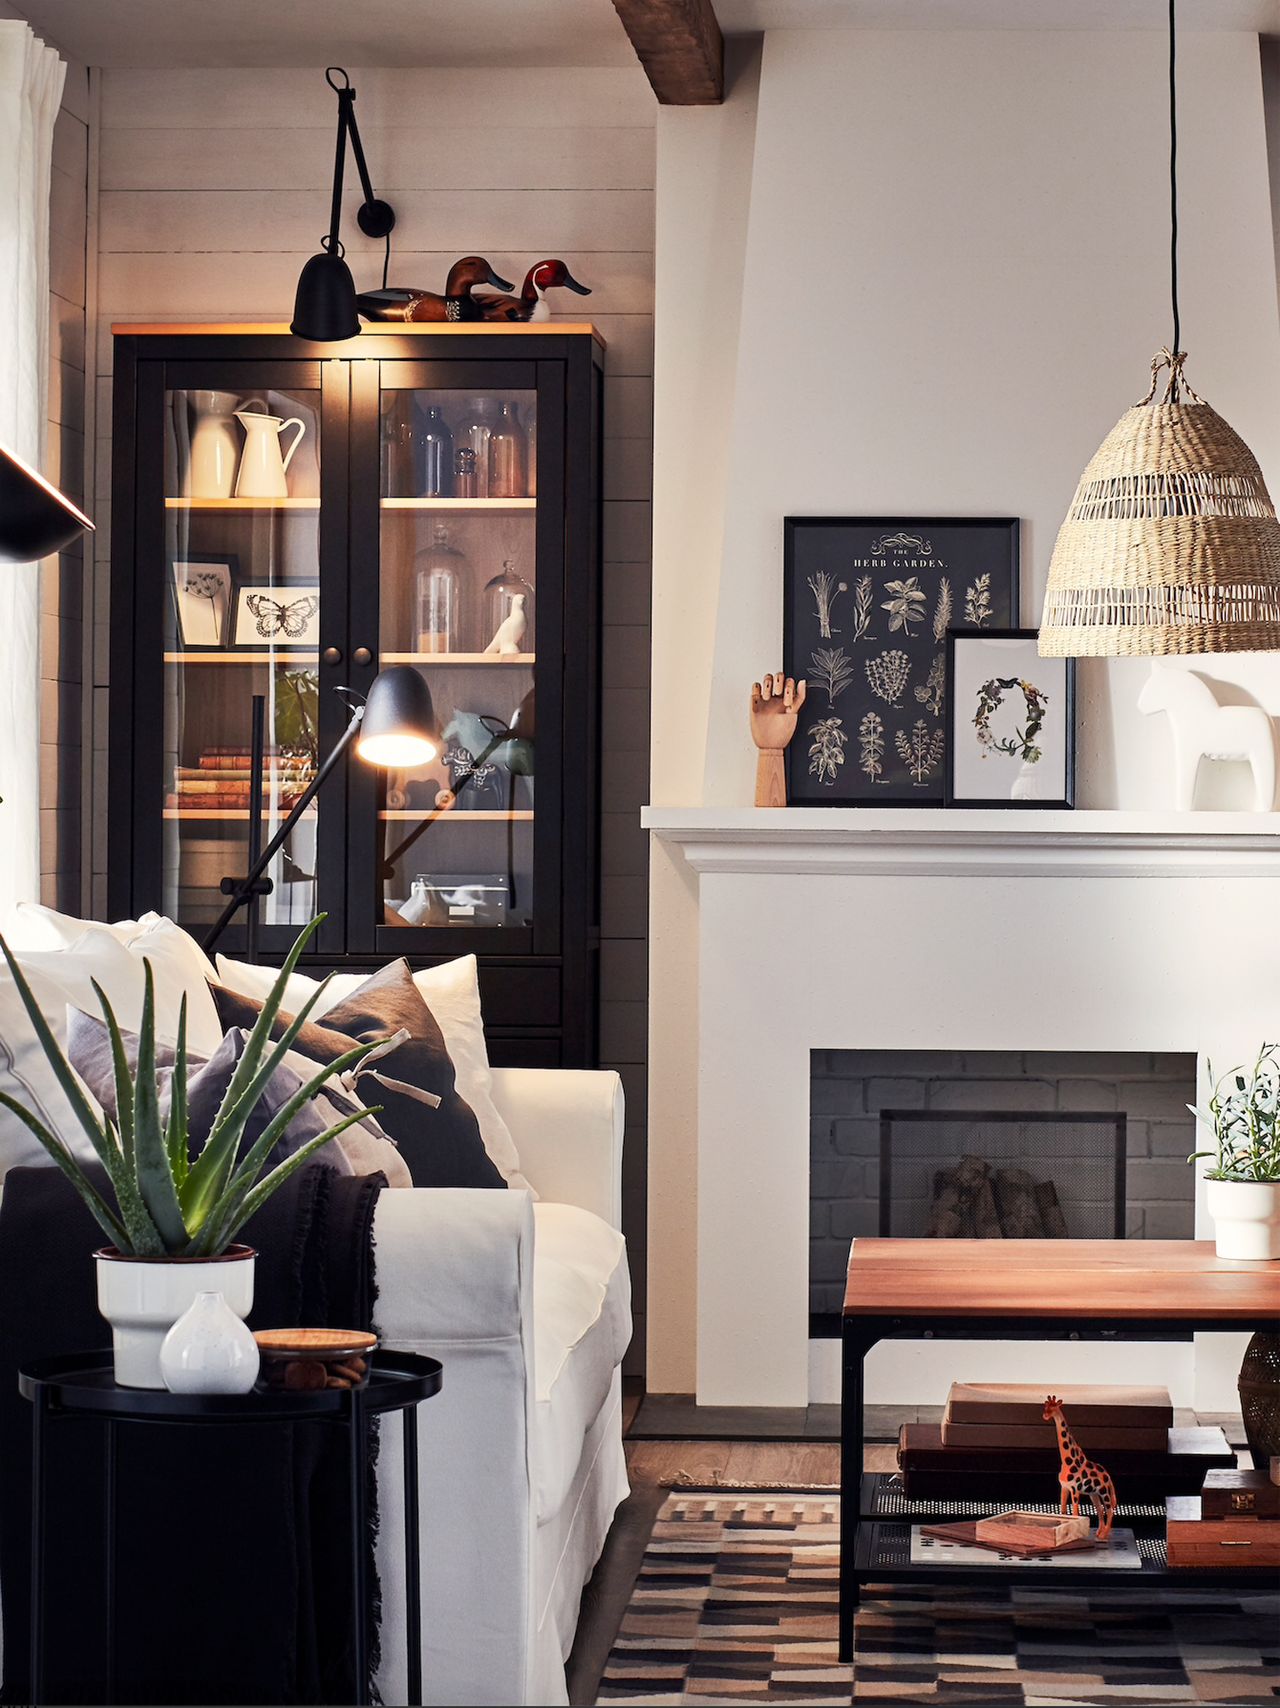 Cream living room ideas: cream vardagsrum med djärva svarta accenter genom möbelramar och hyllor